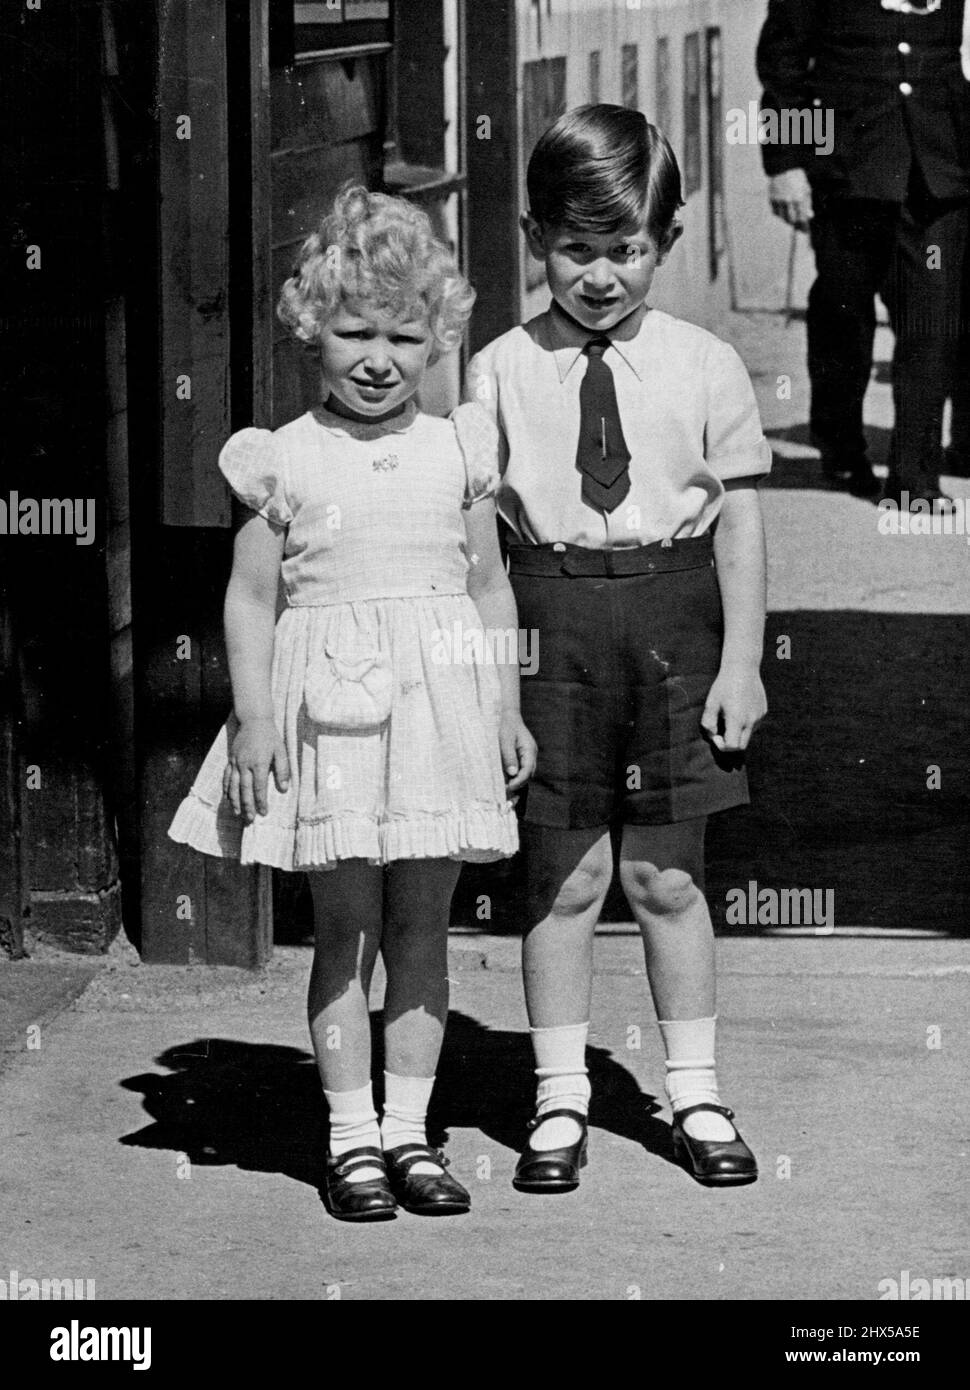 Der Feiertag ist vorbei -- die Königlichen Kinder stellten diese charmante Studie am Montag, den 31.. Mai, zur Verfügung, als sie für die Kameraleute vor der Ballater Station posierten. Die Königlichen Kinder, Princes Charles und Princess Anne, haben mit ihren Eltern, der Königin und dem Herzog von Edinburgh, einen Urlaub in Balmoral, Schottland, genossen, aber die Feiertage müssen zu einem Ende kommen, damit die kleinen Kinder zur Ballater Station für die lange Reise nach London gefahren werden. 02. Juni 1954. (Foto von Paul Popper Ltd.). Stockfoto